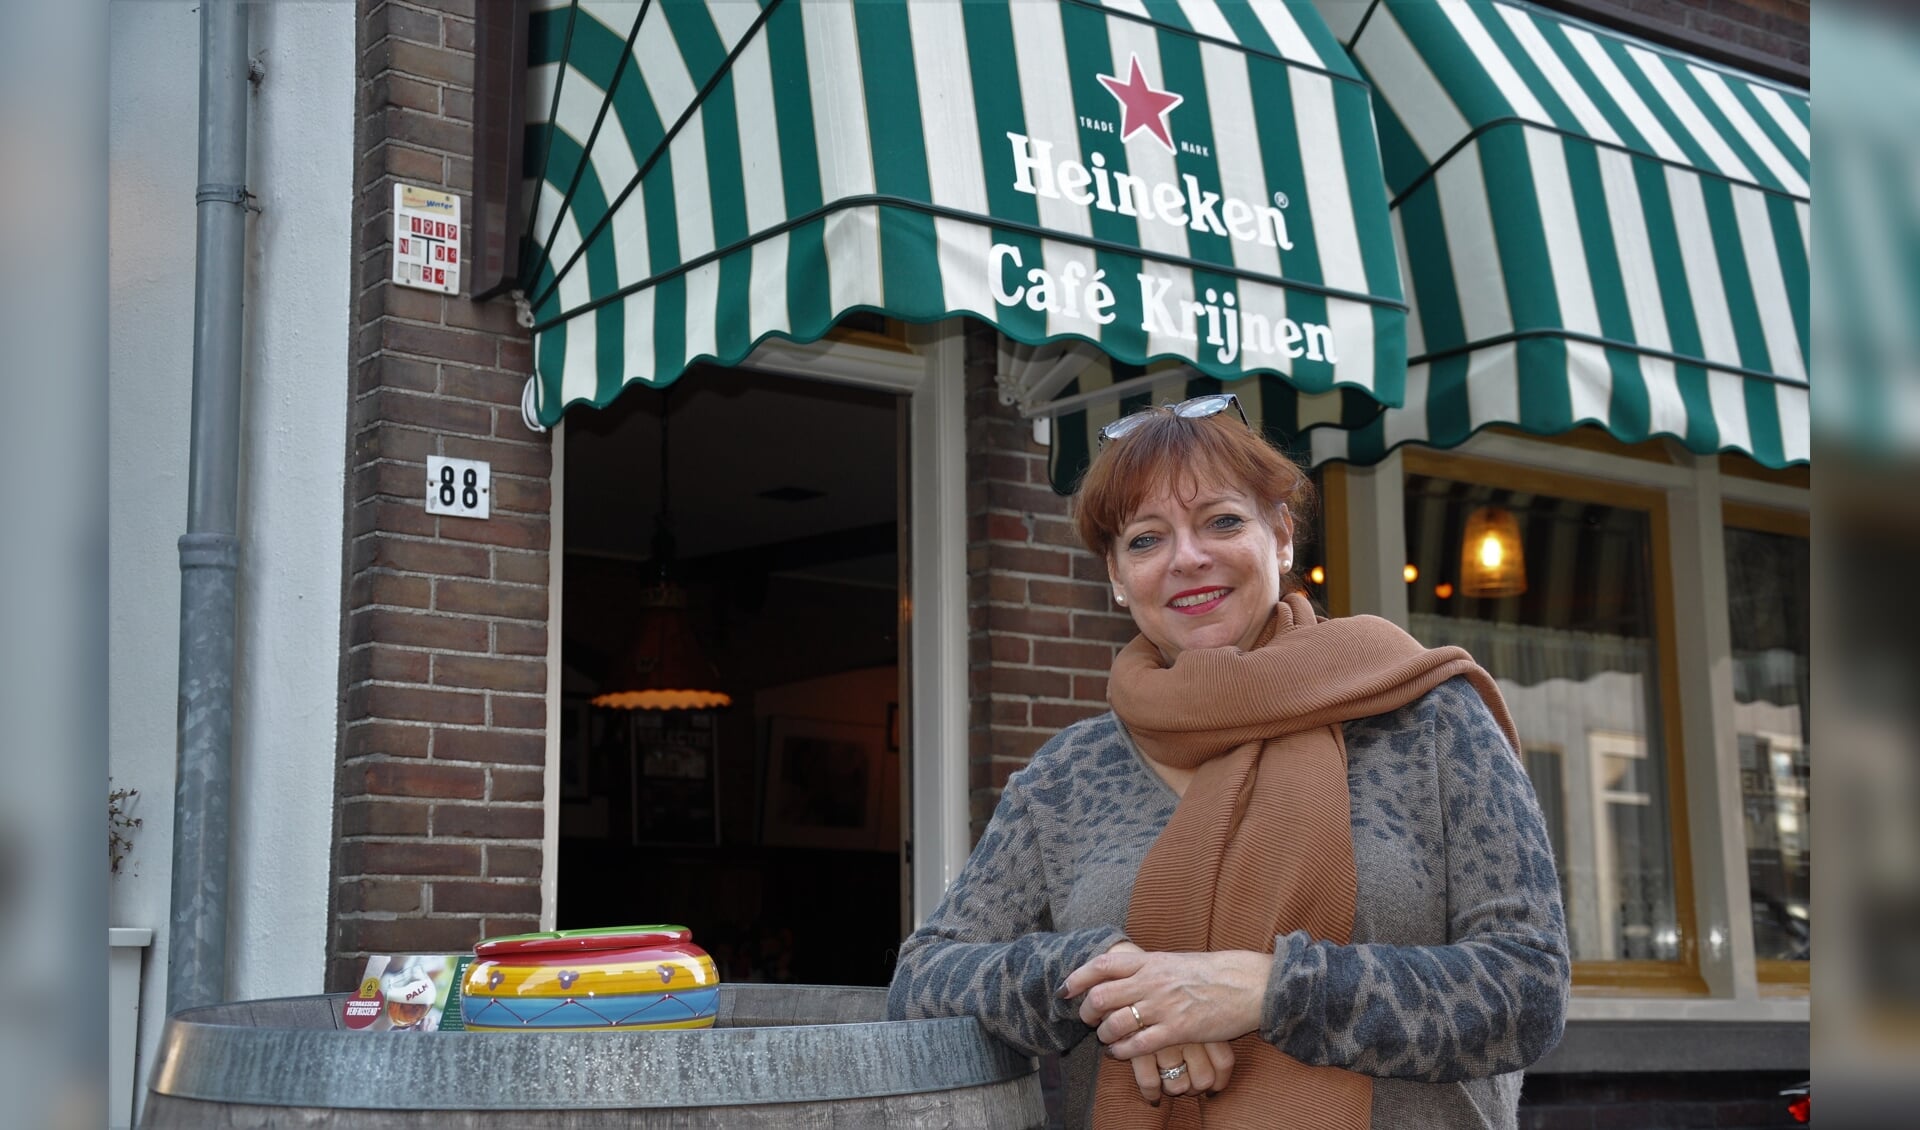 Marloes voor de deur van het zeer bekende café op de hoek van het Klein Weike en de Dubbelstraat.